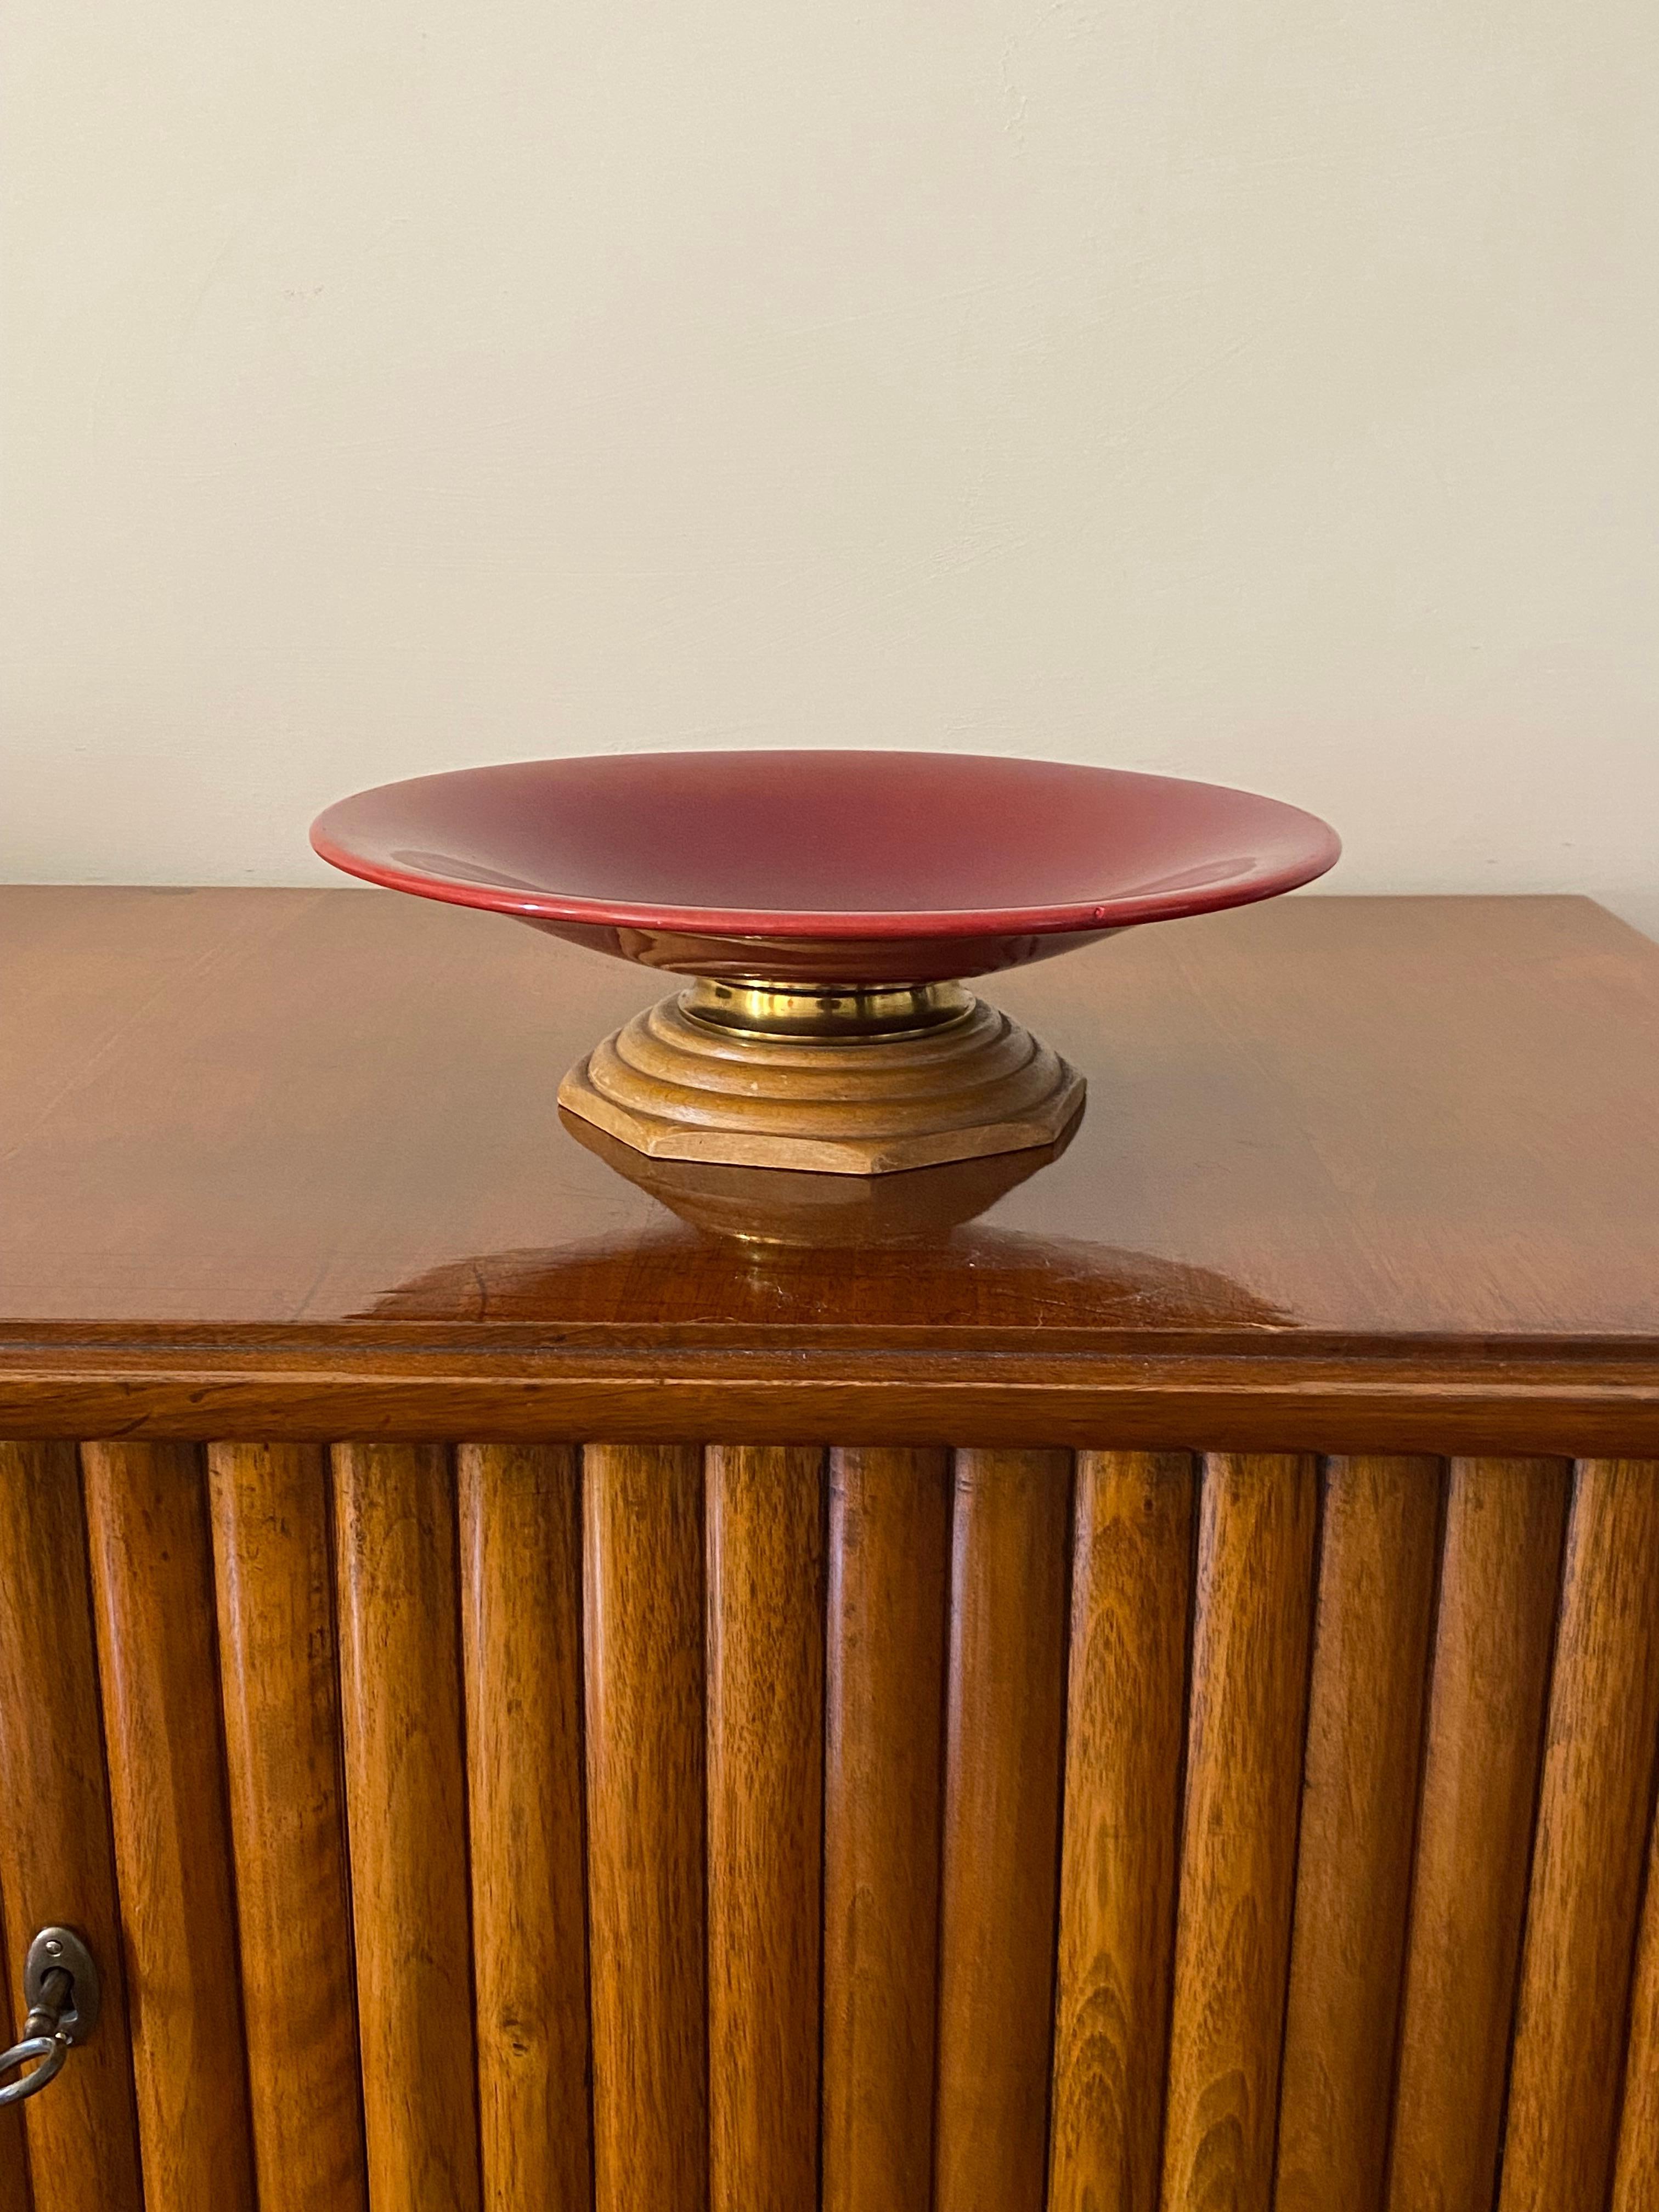 Pochette vide moderne rouge / centre de table

Sèvres France 1940s

bois, céramique

9 cm H x 30 cm diam.

Condit : excellent, conforme à l'âge et à l'utilisation.